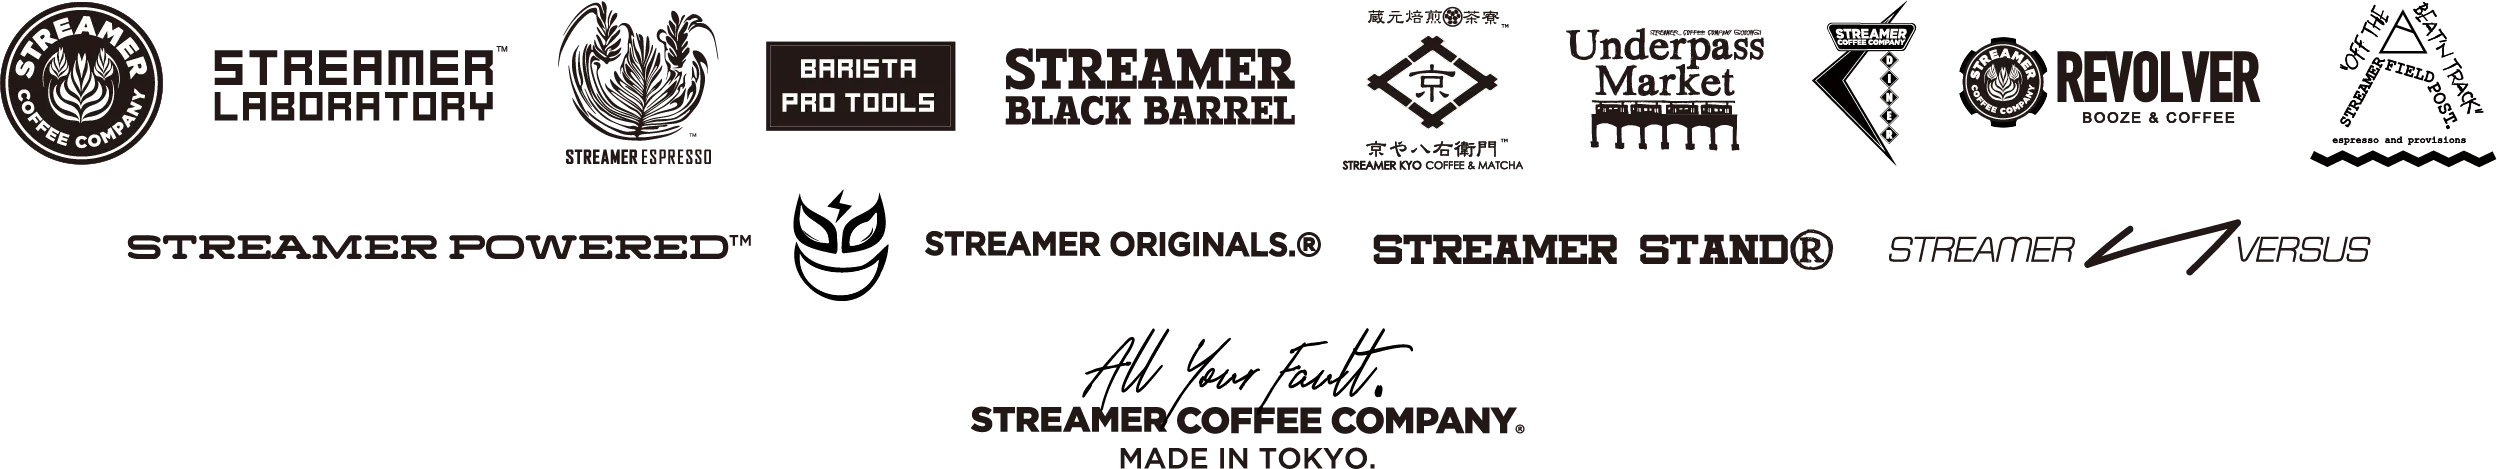 Streamer Logos